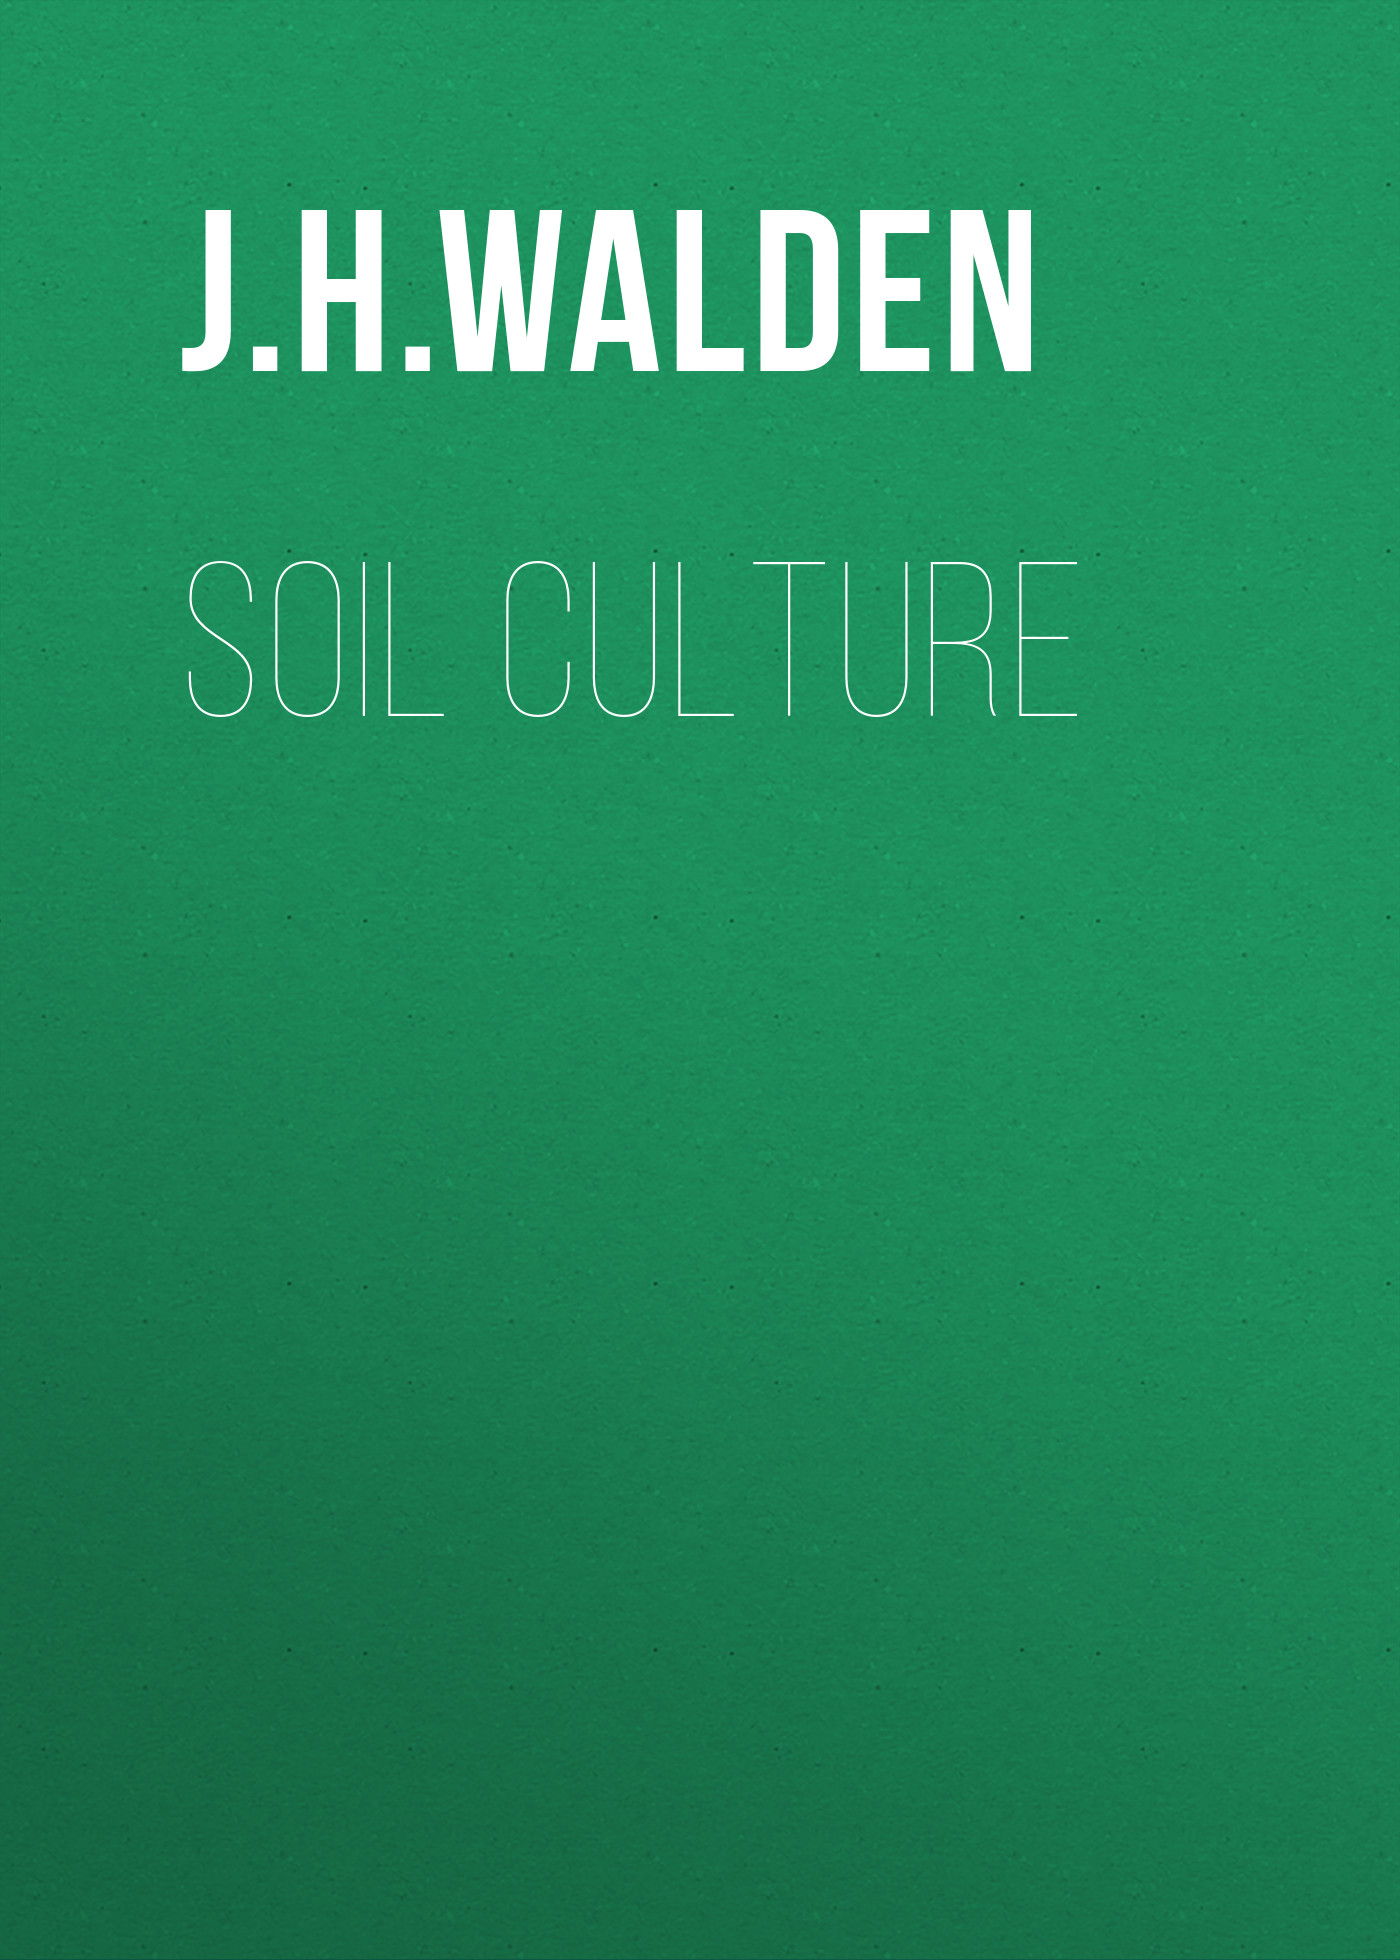 Книга  Soil Culture созданная J. H. Walden может относится к жанру зарубежная образовательная литература, компьютерное железо, руководства, сельское хозяйство. Стоимость электронной книги Soil Culture с идентификатором 34282800 составляет  руб.